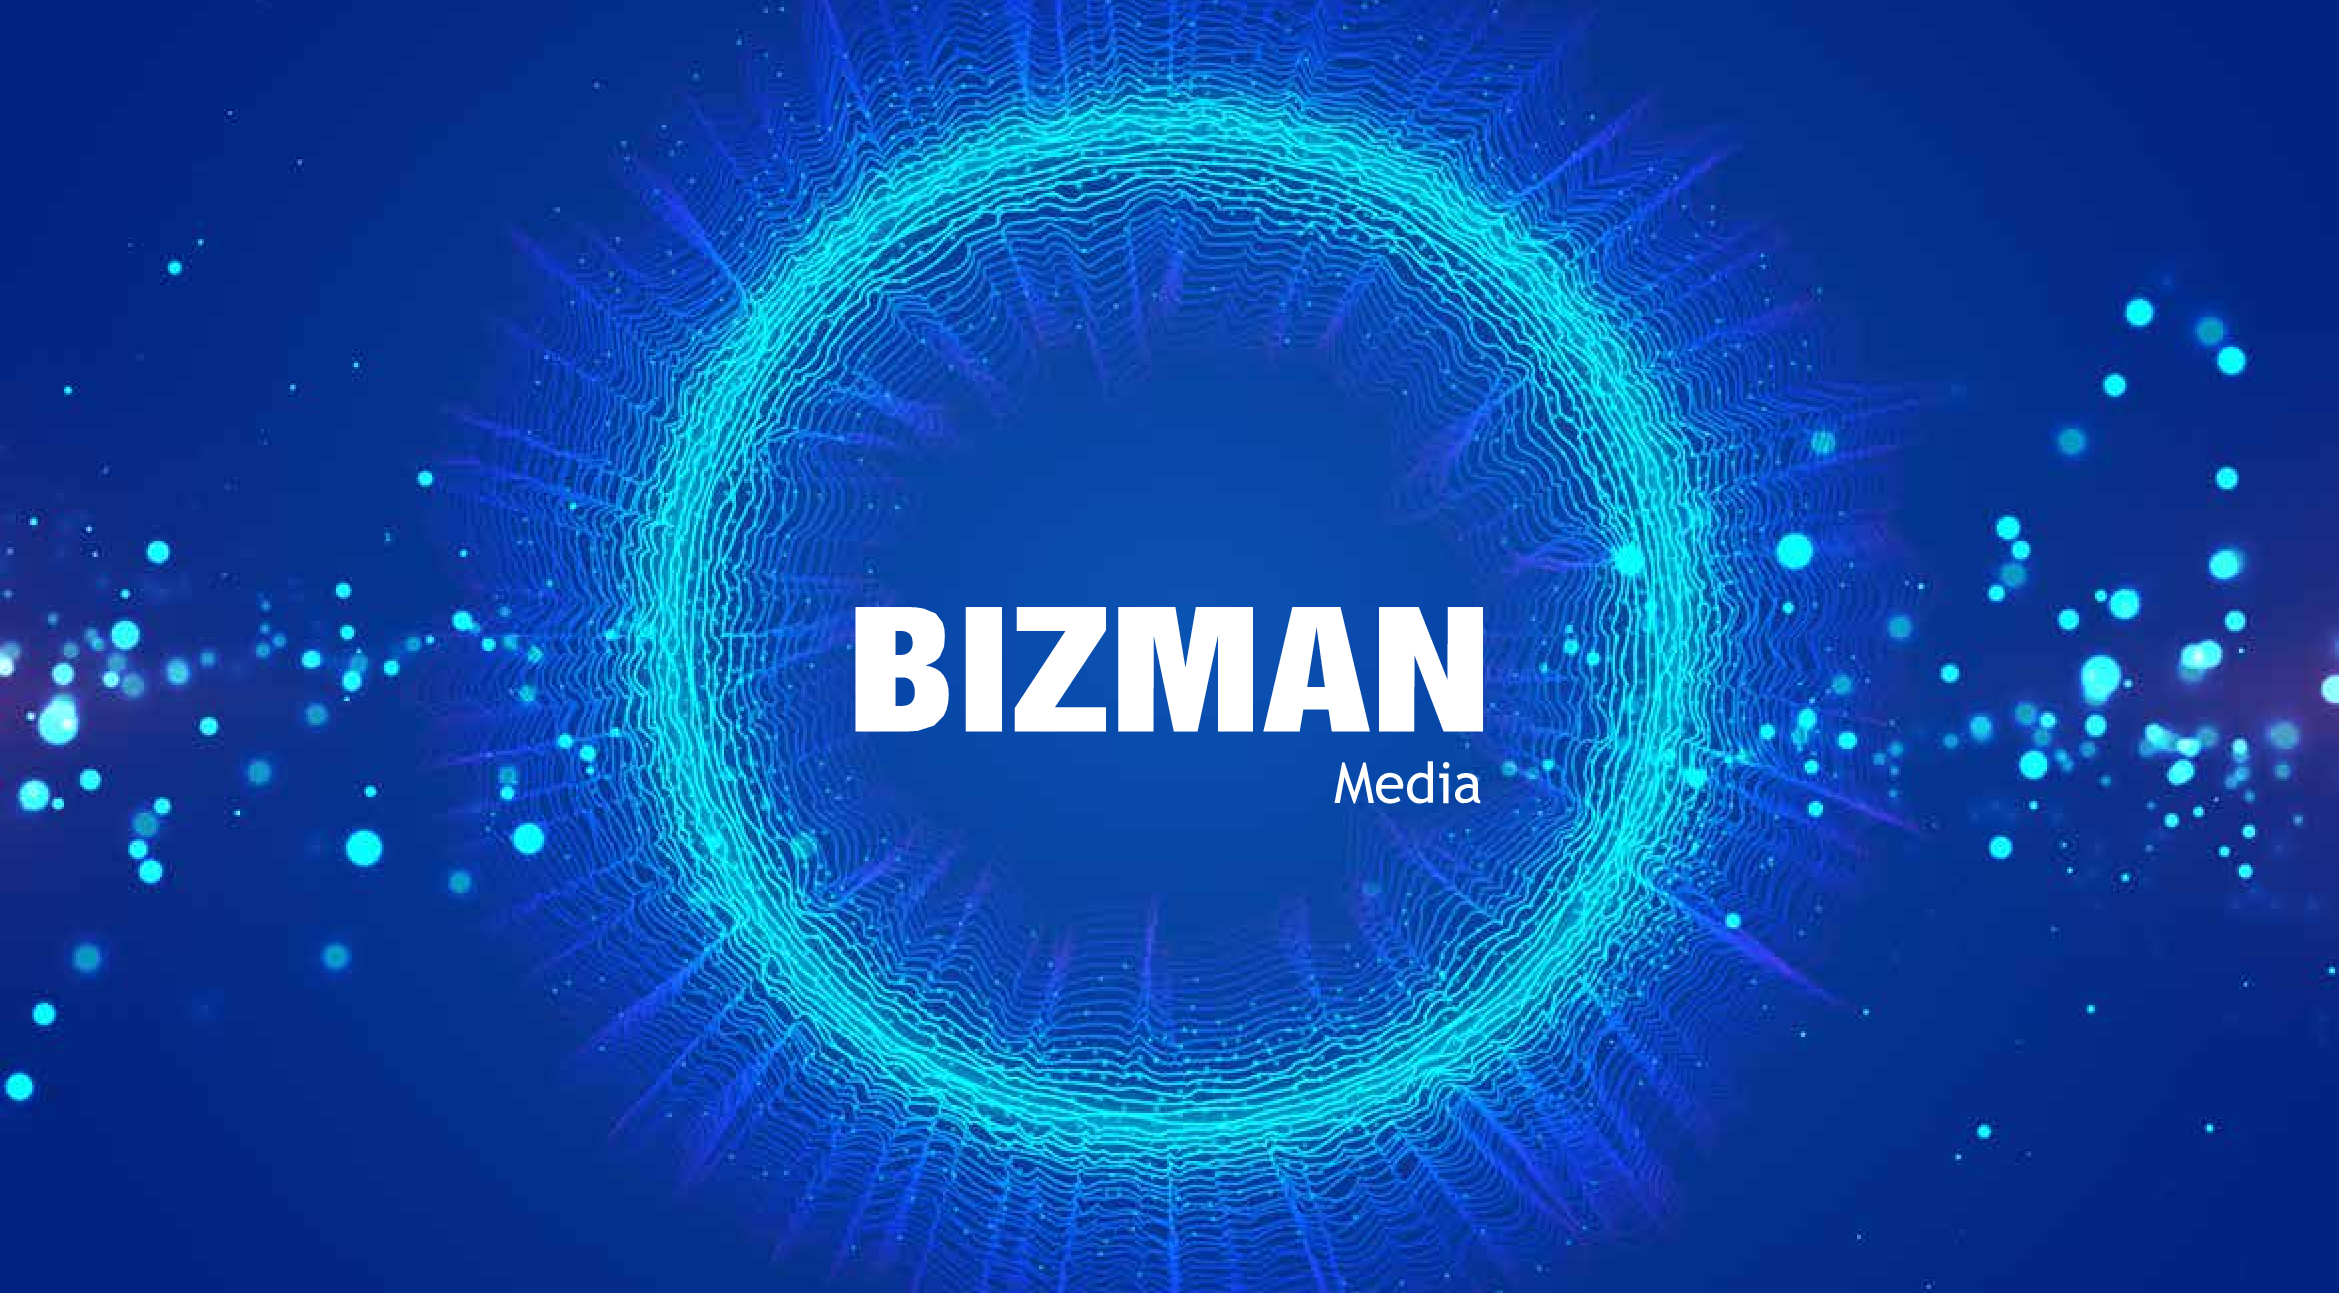 Bizman Media sản xuất TVC cho cá nhân, công ty, doanh nghiệp